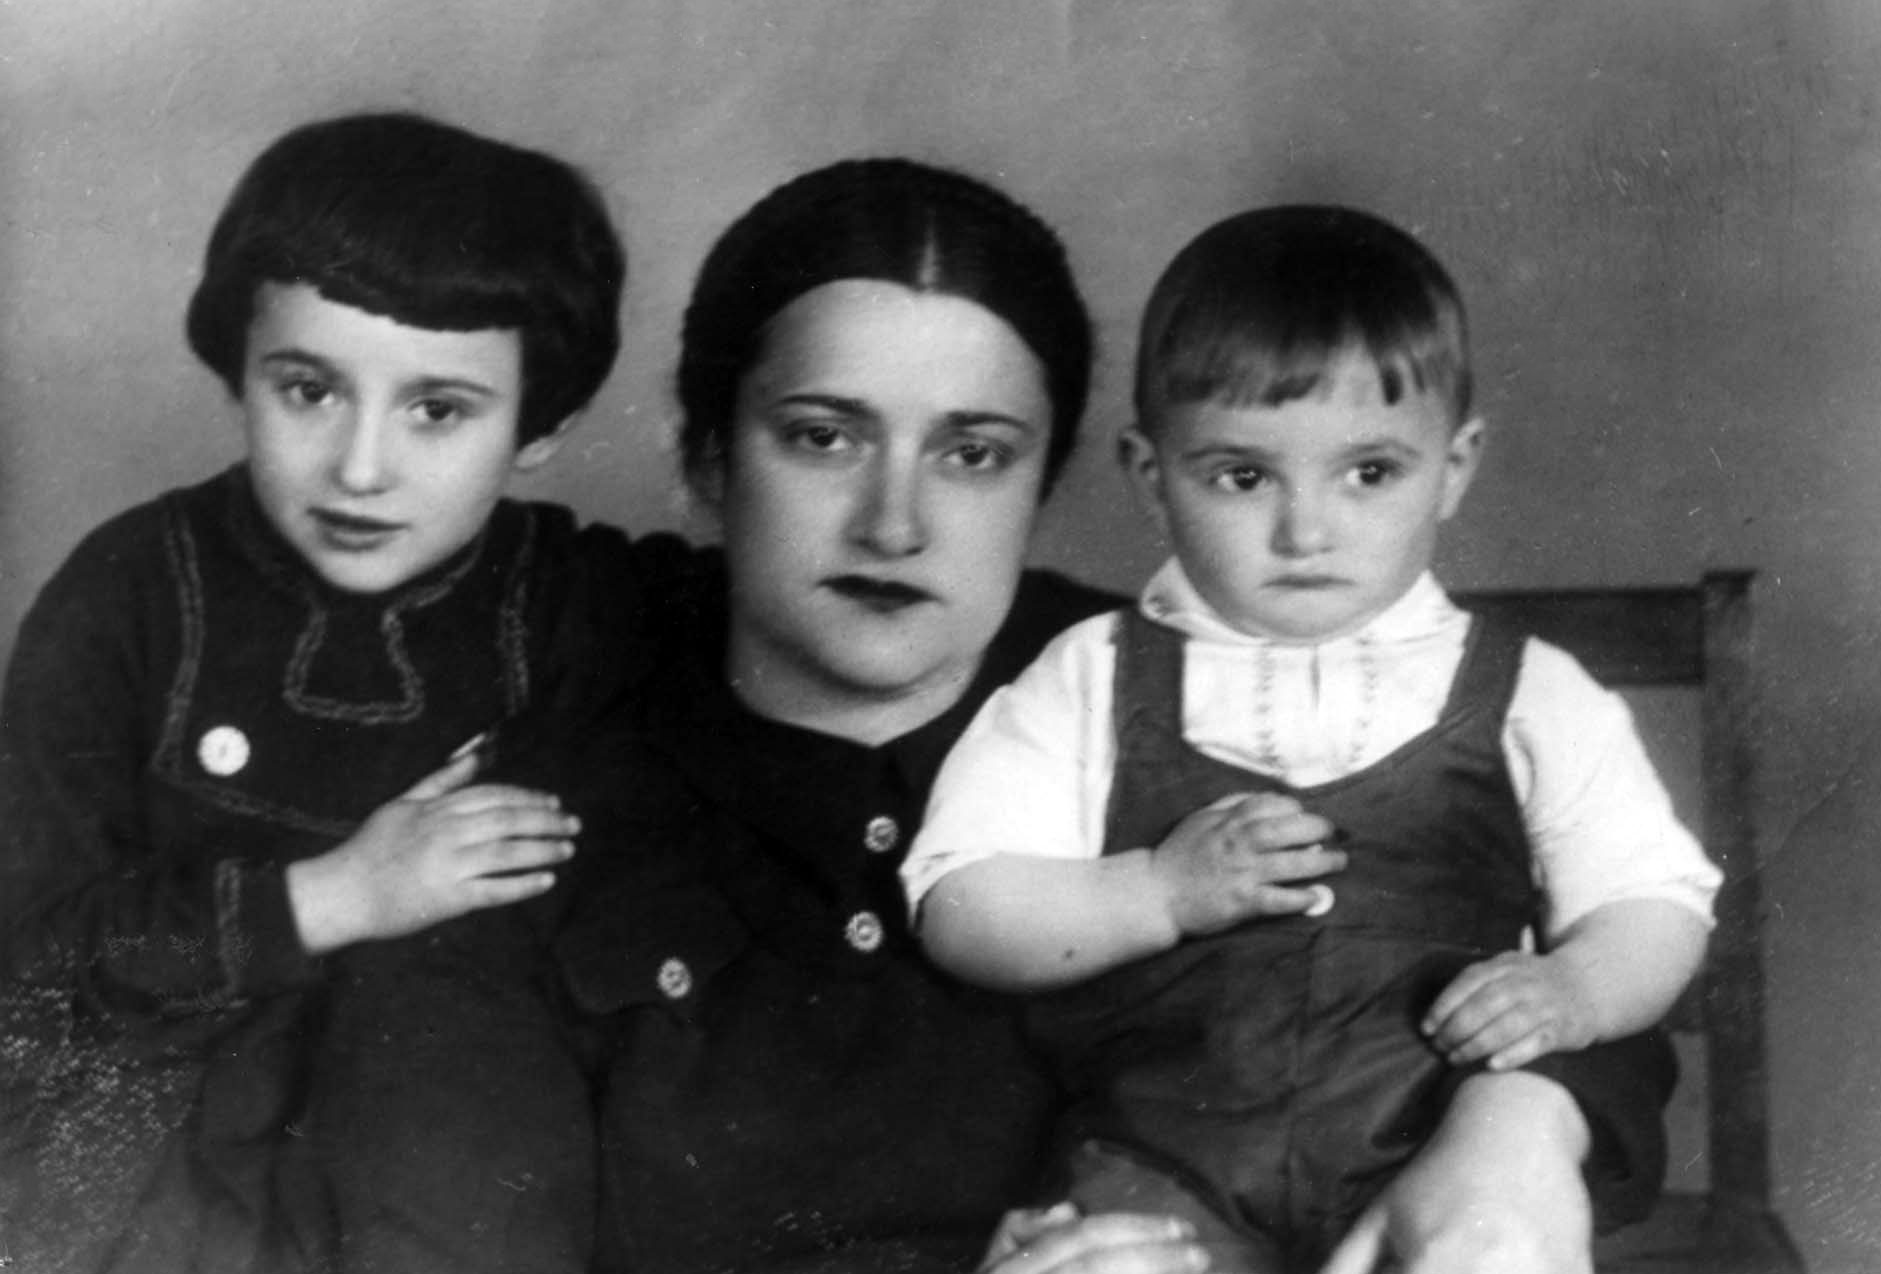 טניה קוטליאר נולדה בקייב שבאוקראינה ב-1915 ונרצחה בספטמבר 1941 בבאבי יאר. בעלה בוריס שרד.